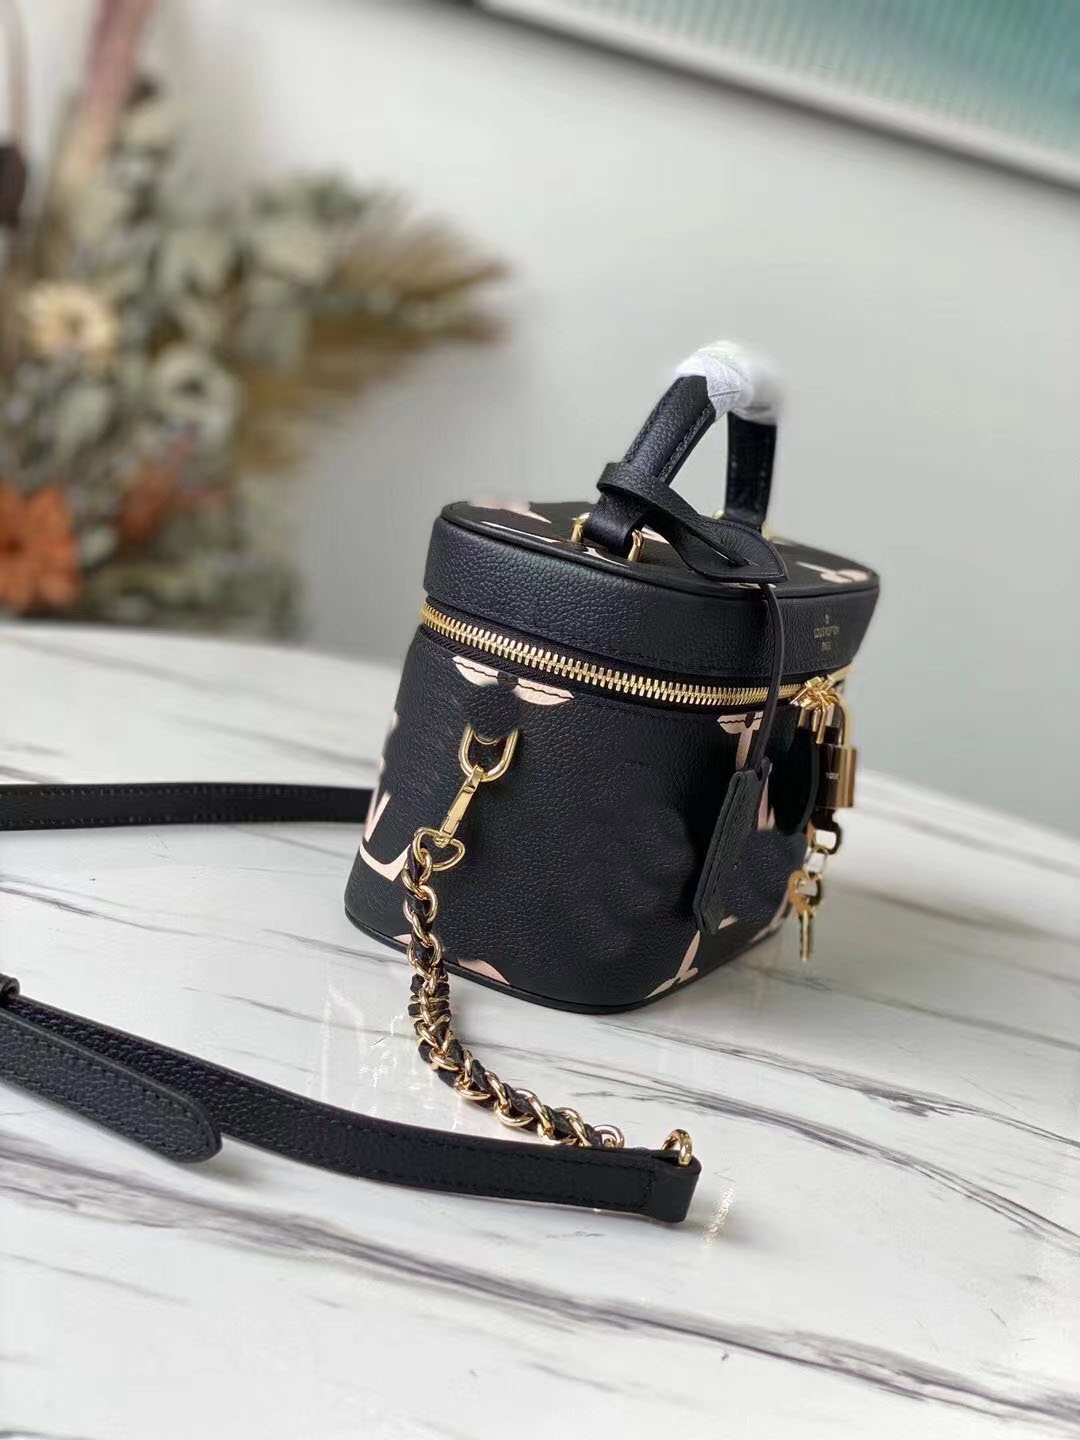 5aaaaa 버킷 메이크업 가방 최신 컬러 크로스 바디 백 고품질 디자이너 여성 패션 핸드백 여름 럭스 브랜드 숄더백 무료 상자 구성